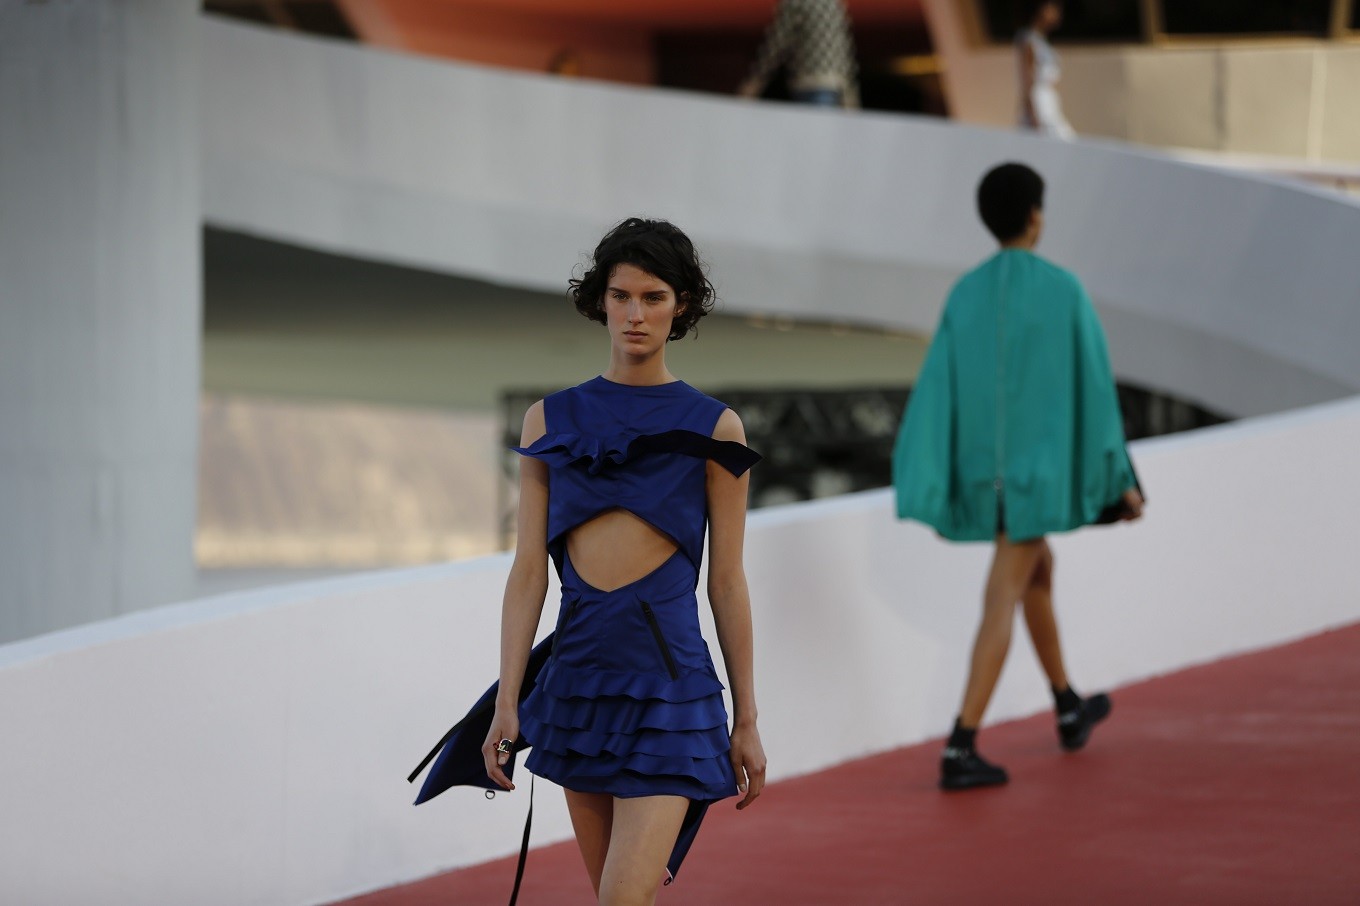 In picture: Louis Vuitton cruise collection show in Rio de Janeiro